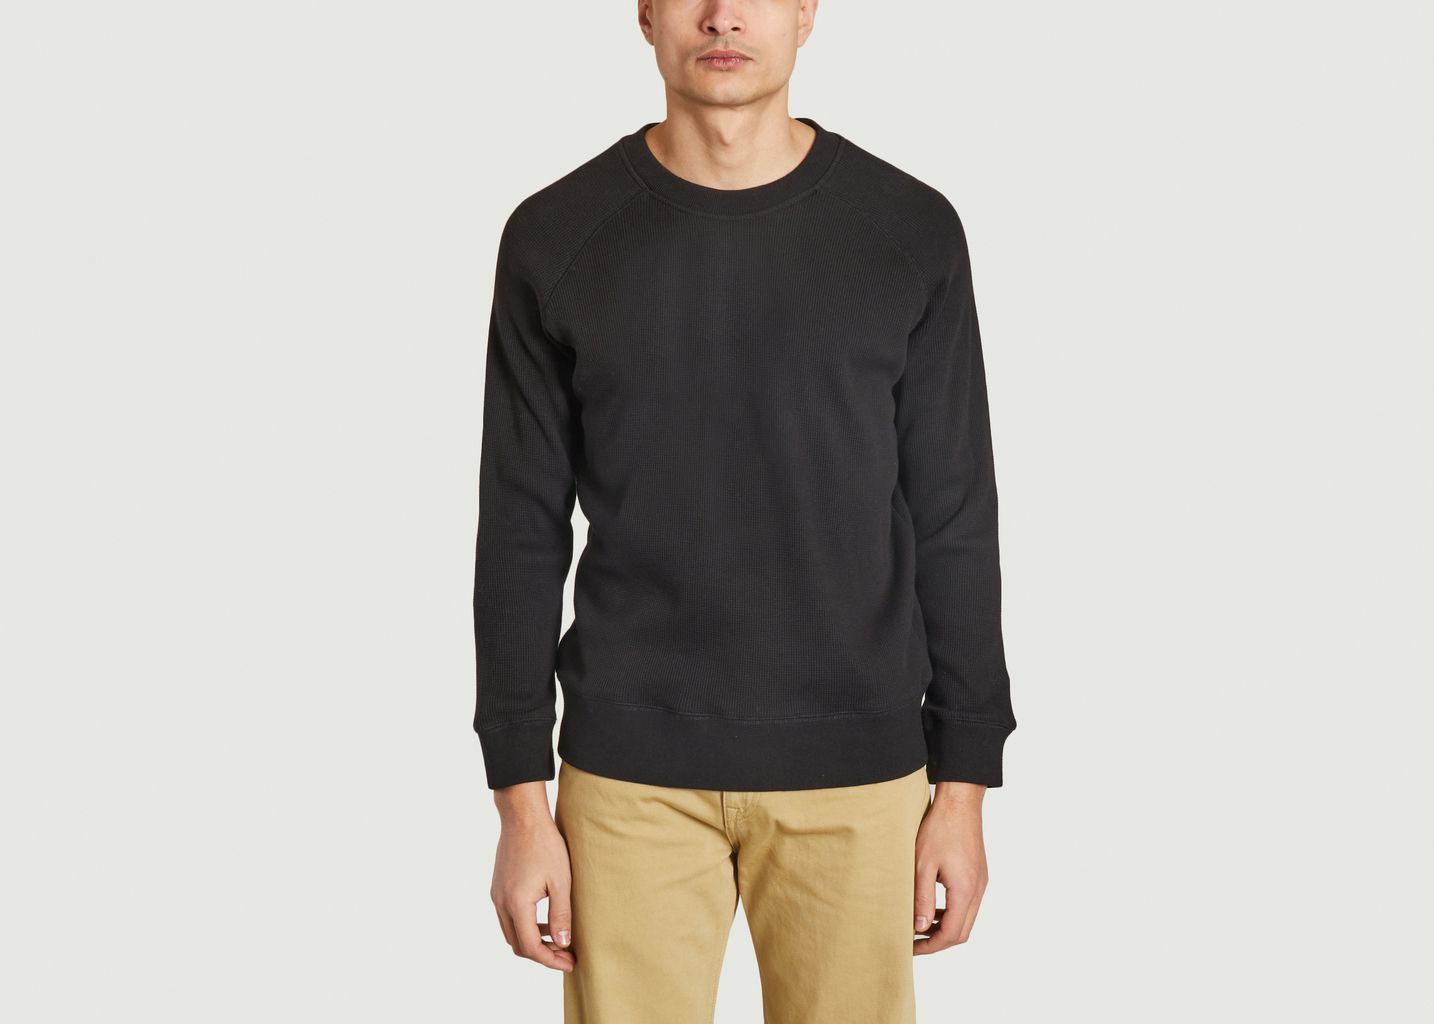 Jersey Sweatshirt - M.C. Overalls